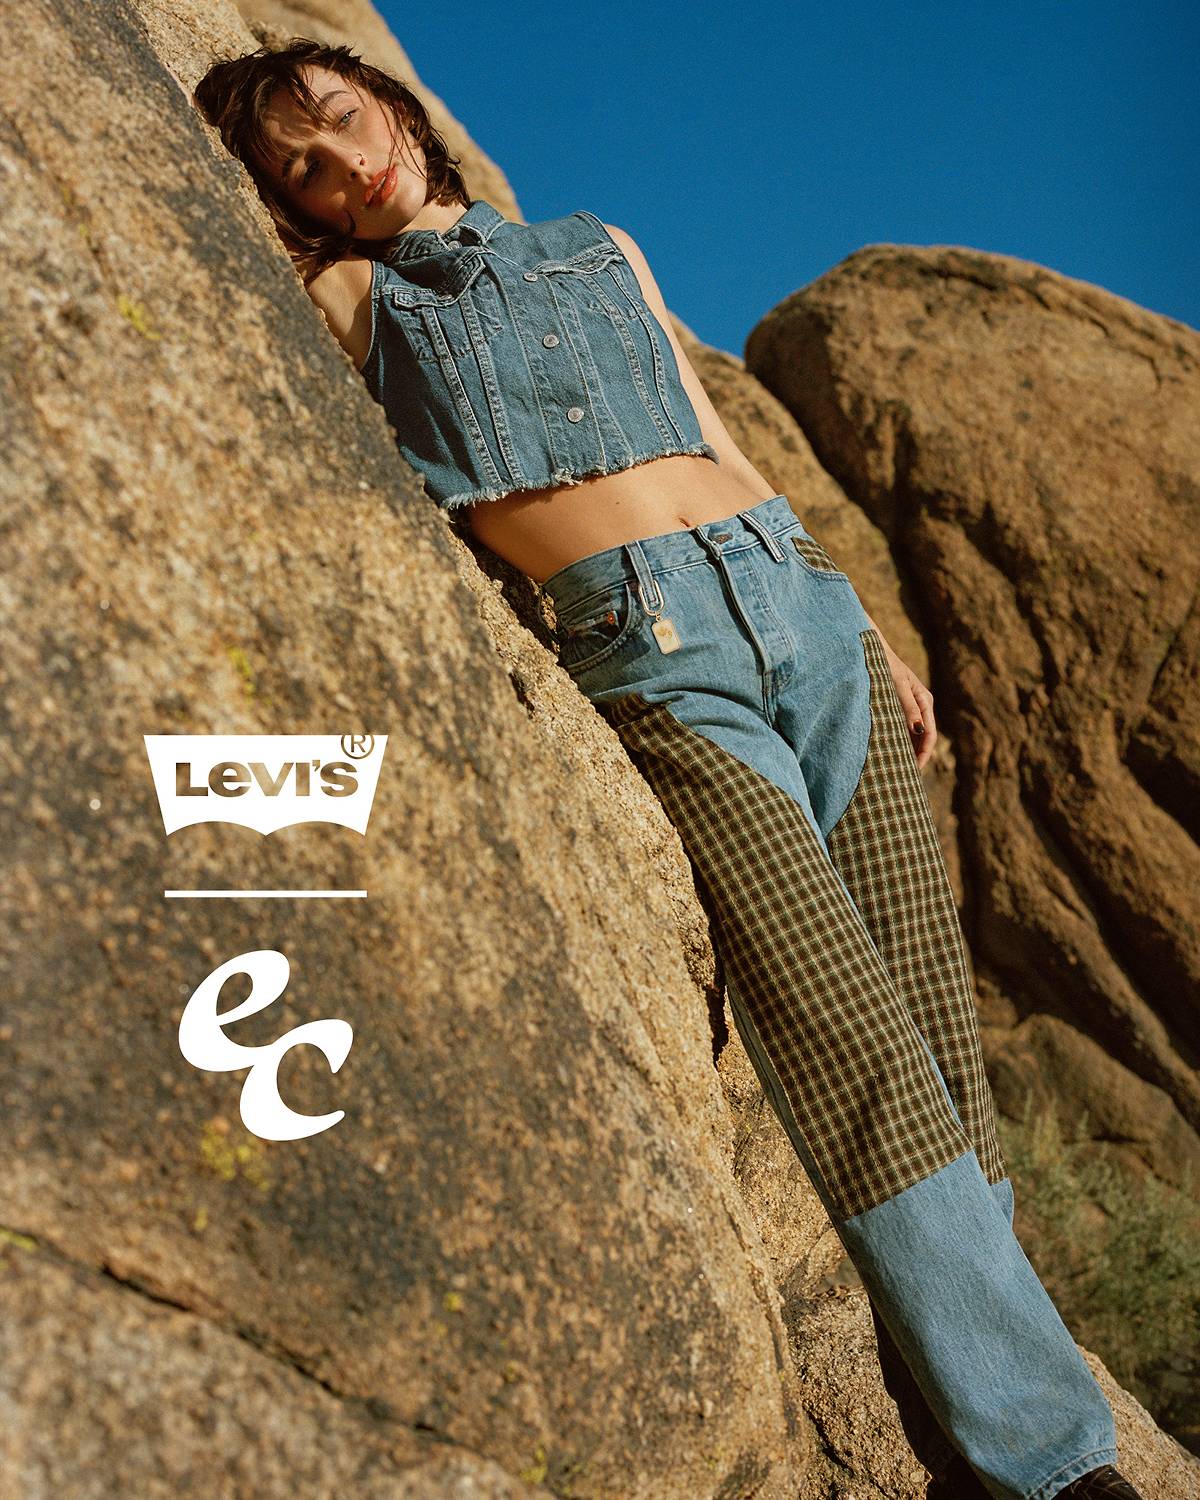 Supreme x Levi's Leafy Camo Collaboration Drops Black Friday